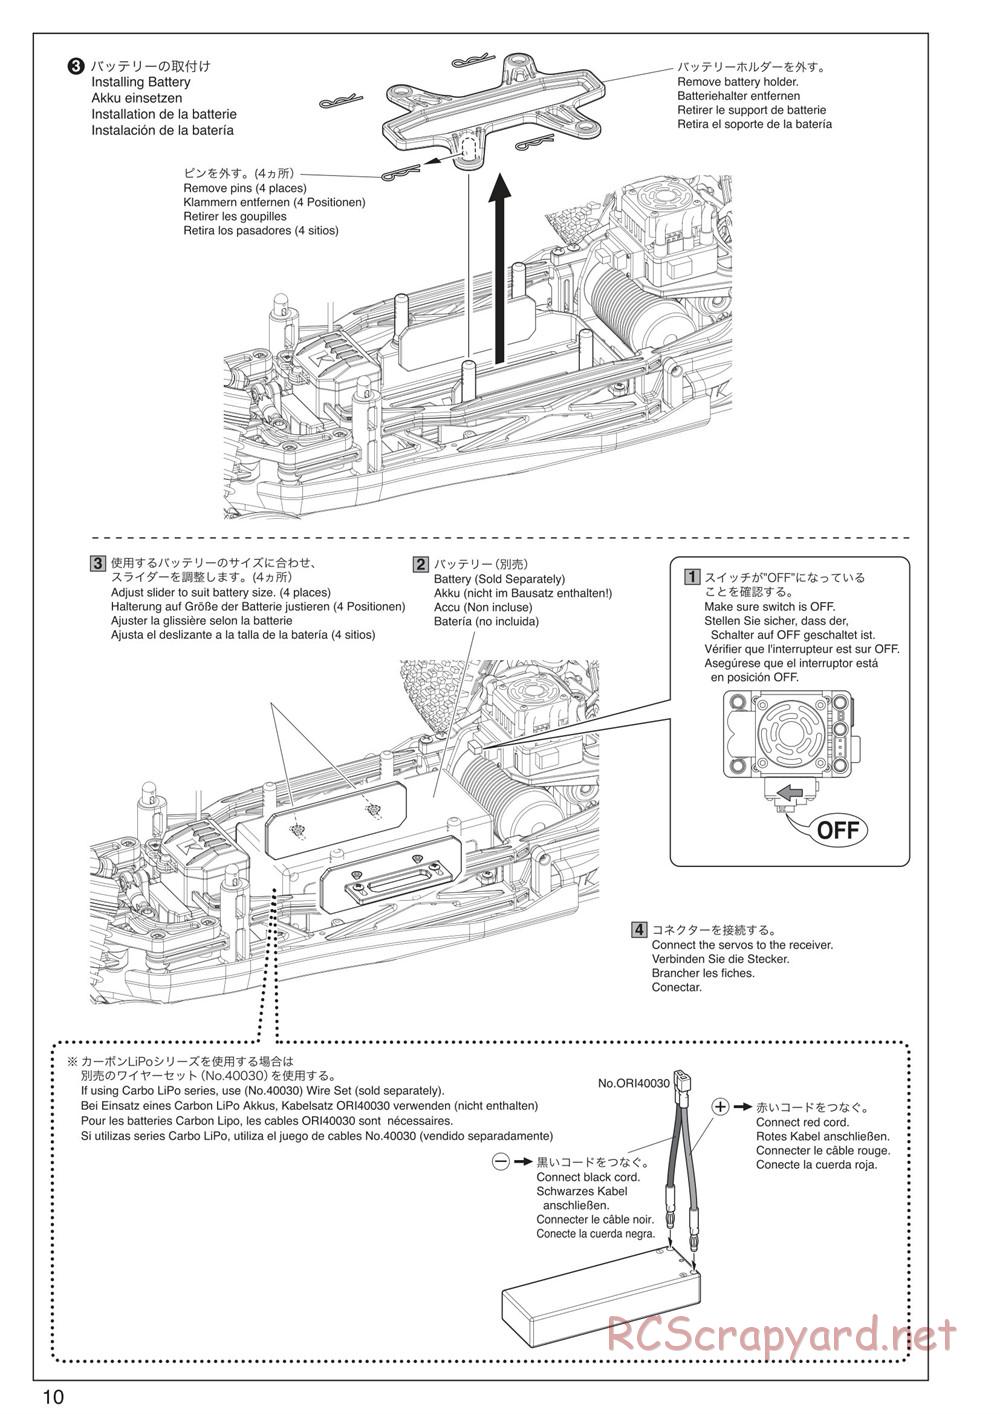 Kyosho - Scorpion XXL VE - Manual - Page 10